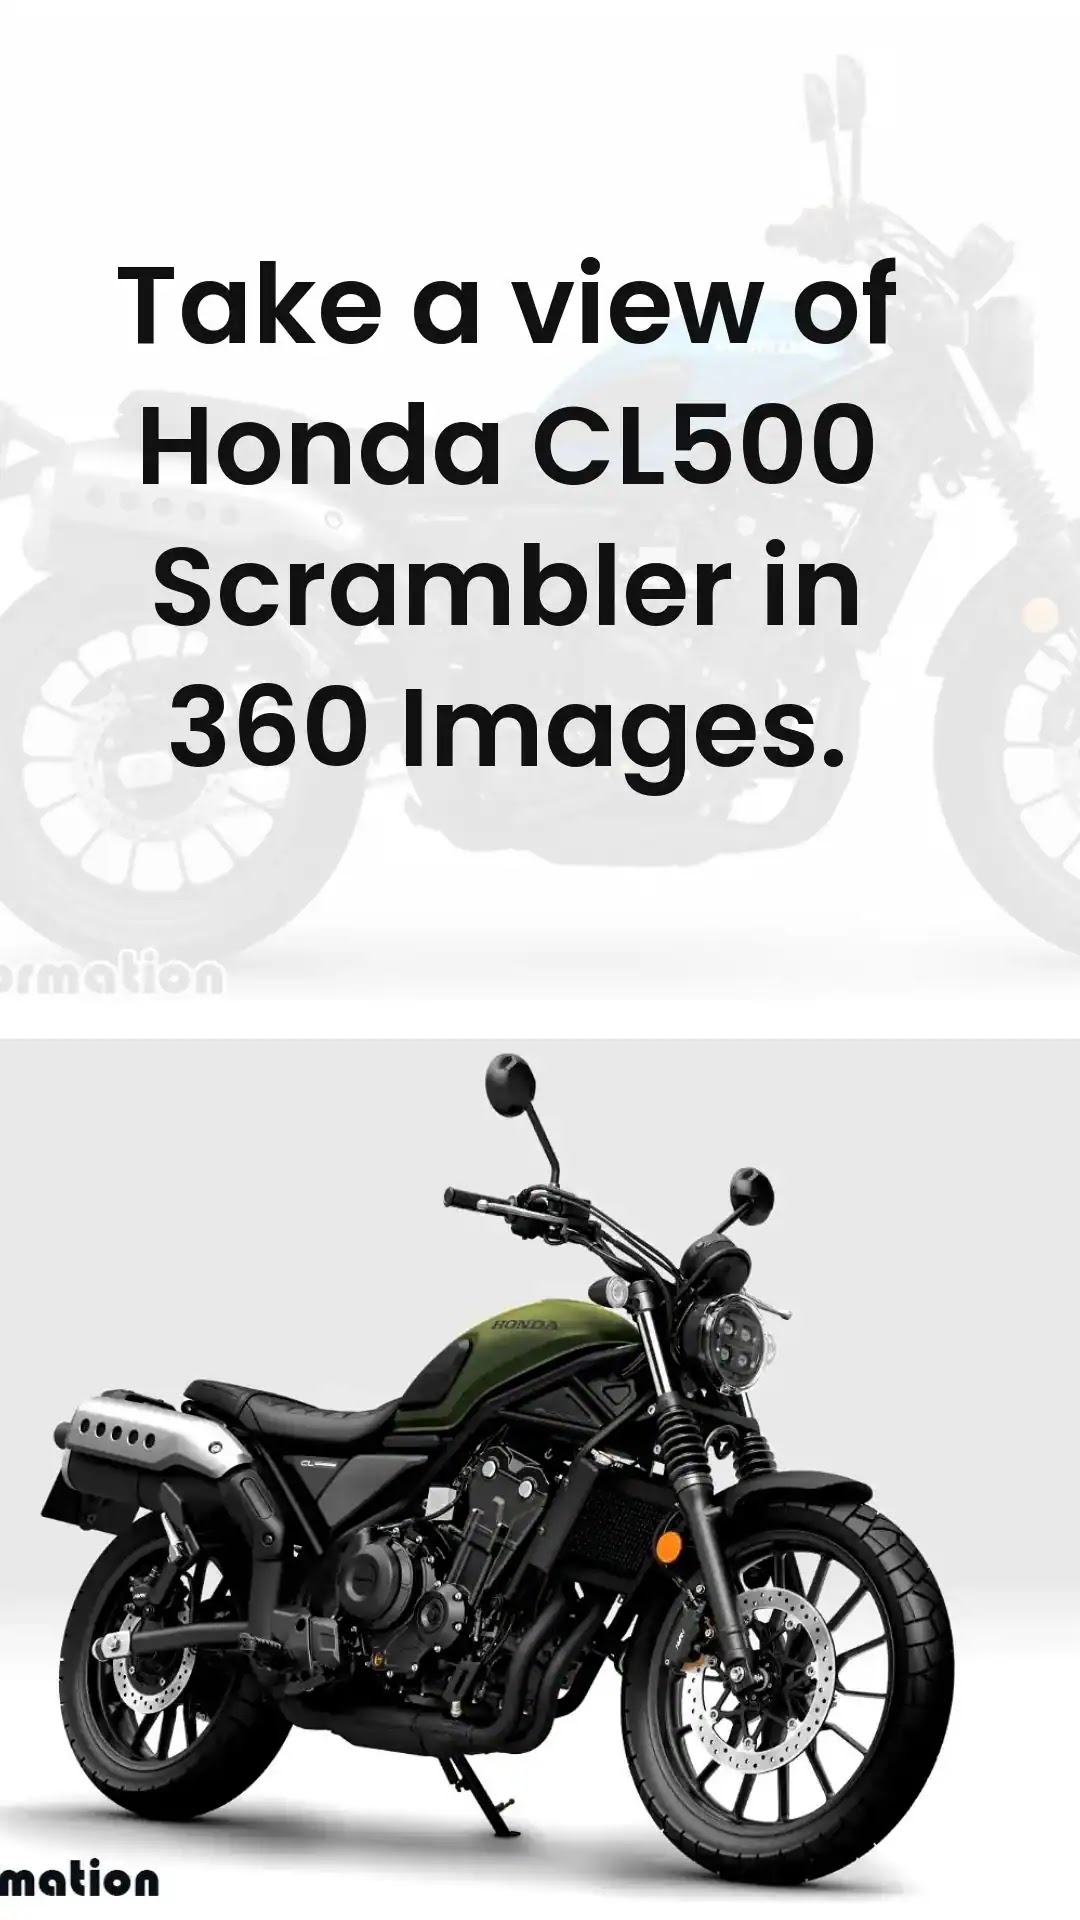 Honda CL500 Scrambler